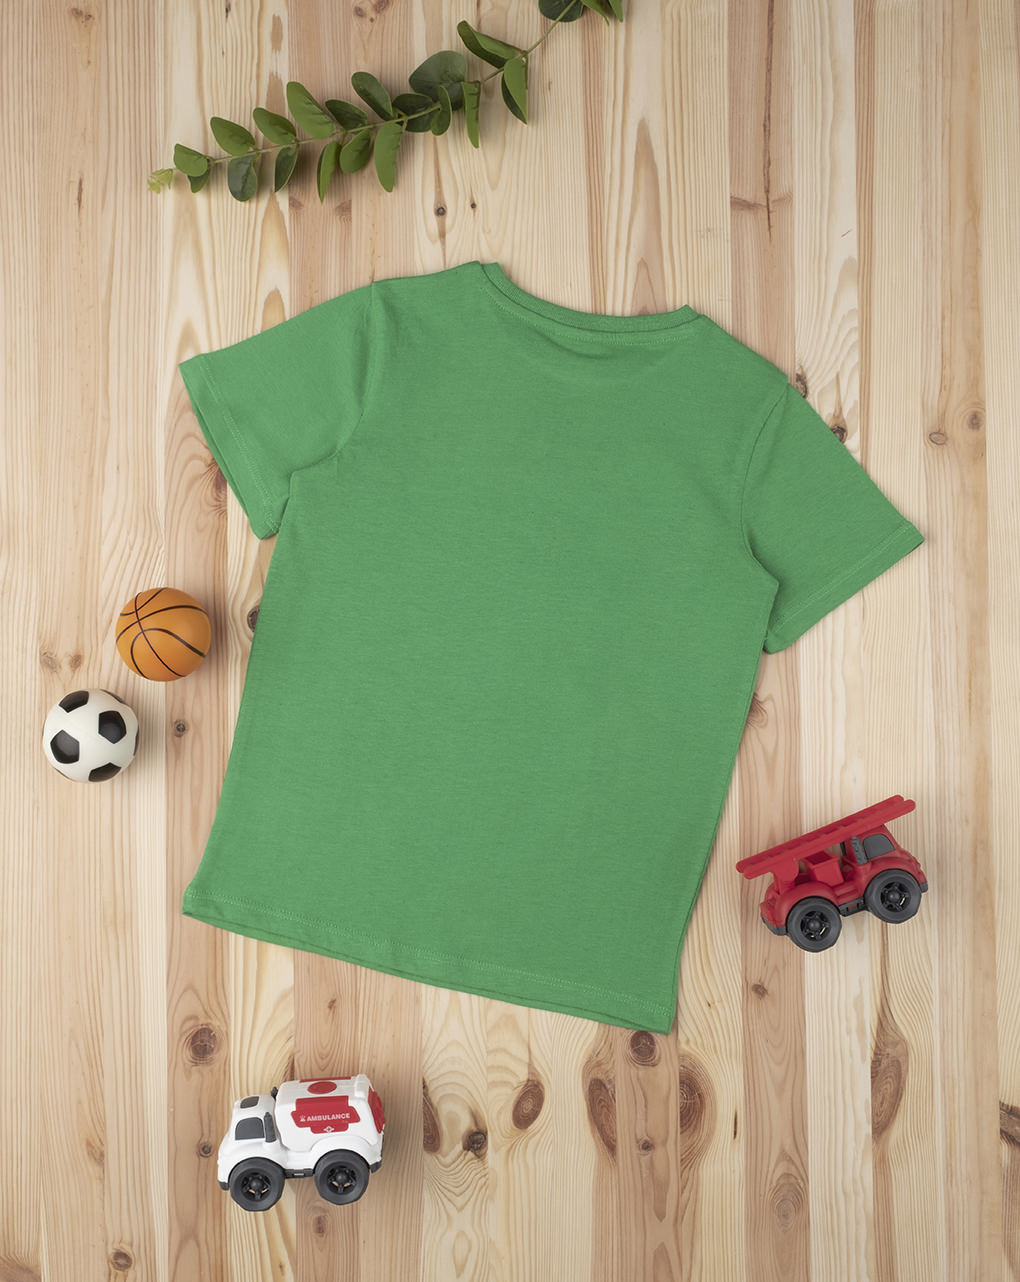 T-shirt boy "street sport" green - Prénatal